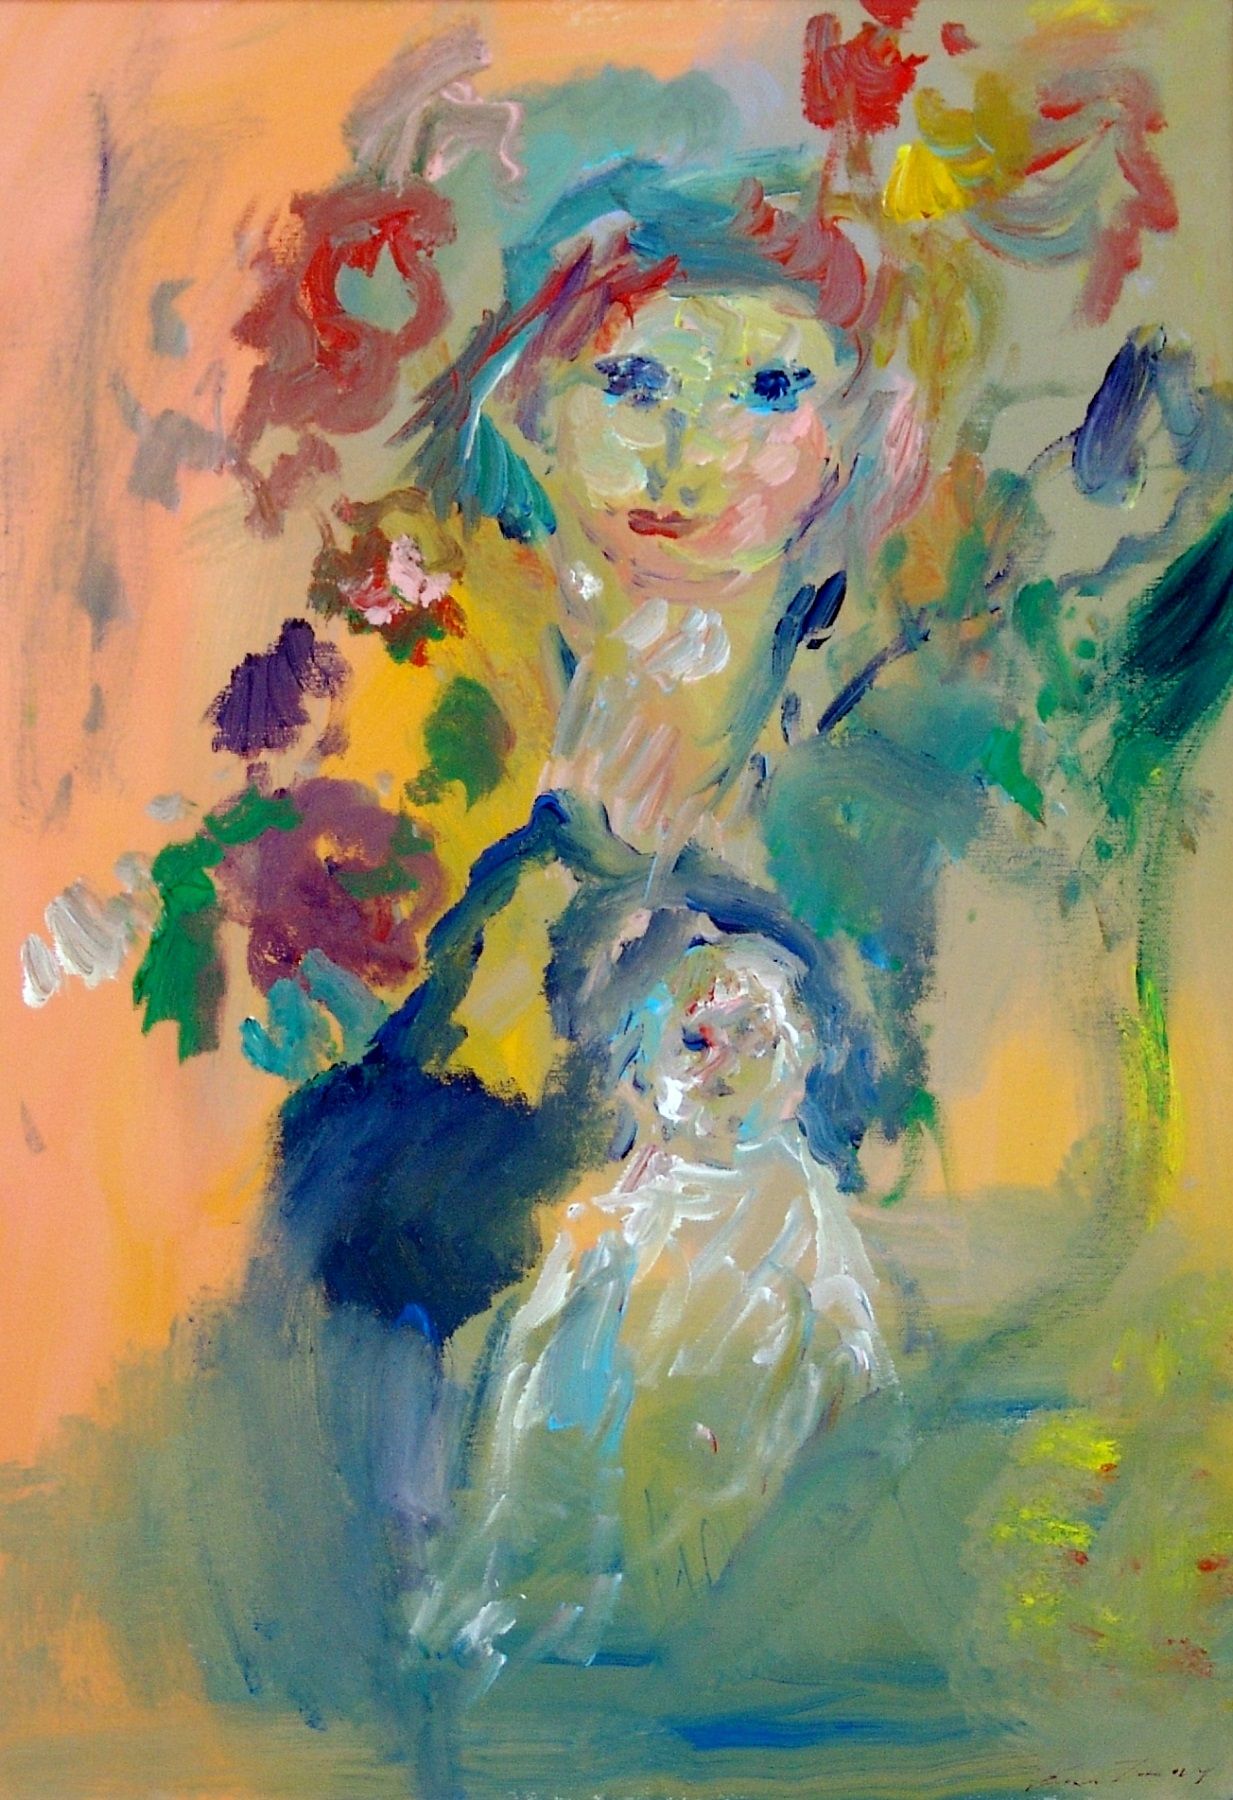 ERNESTO TRECCANI Maternità, 1997, olio su tela, 70x50 cm

firma dell'artista in &hellip;